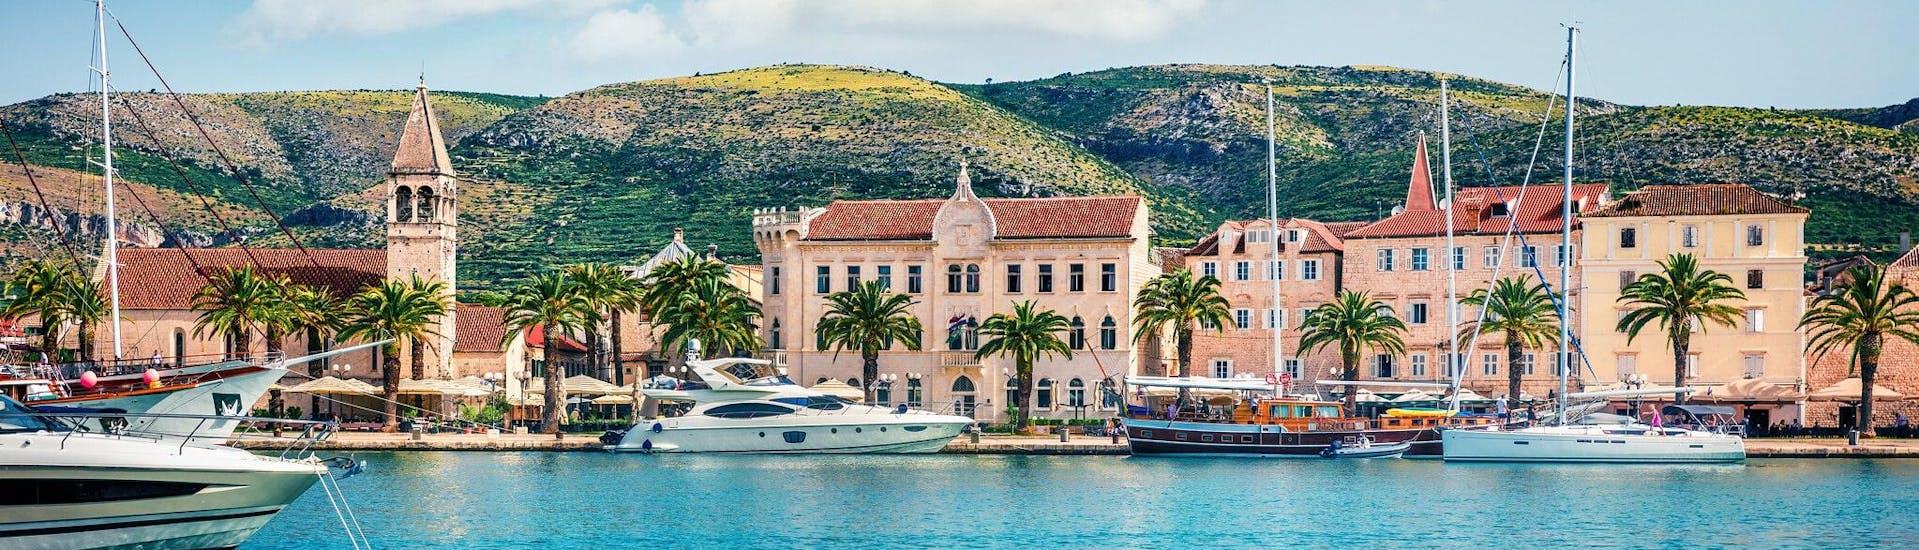 Blick auf den Hafen, der ein idealer Startpunkt für Bootsverleih in Trogir ist.